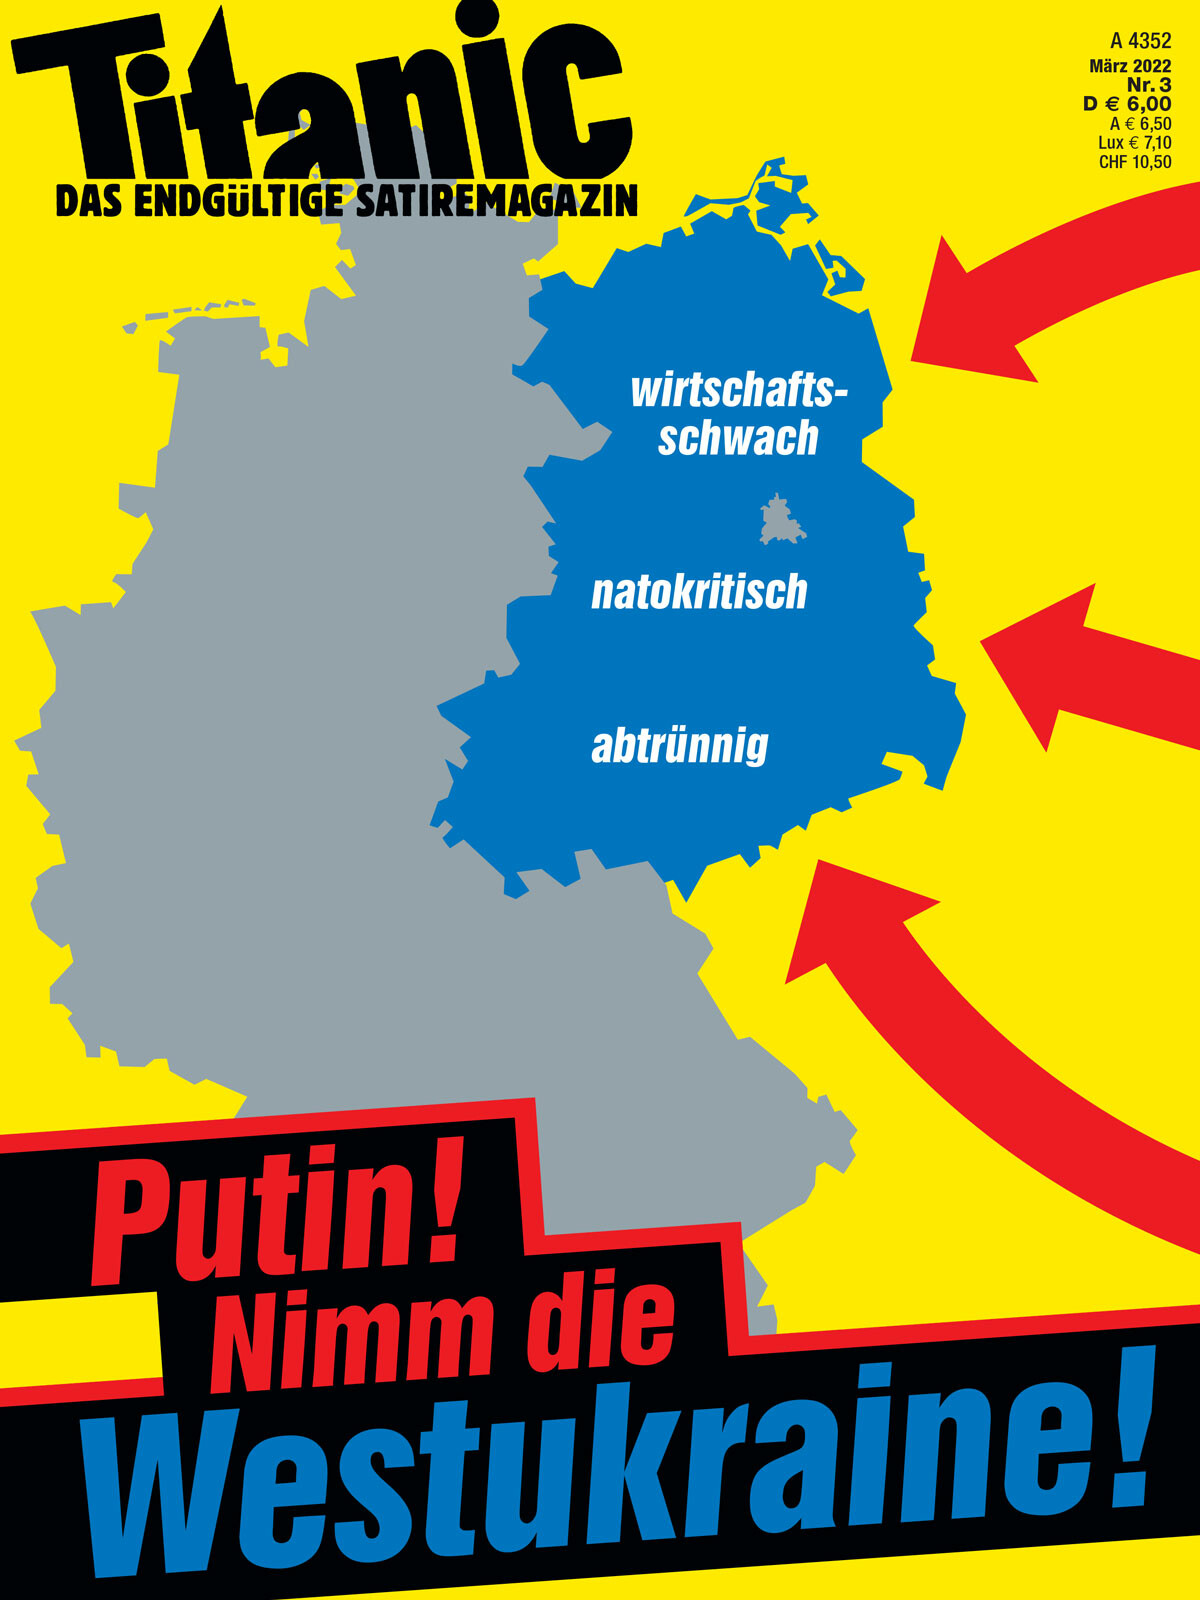 Titanic Magazin Cover "Putin! Nimm die Westukraine!" markiert sind die Neuen Bundesländer und beschriftet mit "wirtschaftsschwach - natokritisch - abtrünnig"